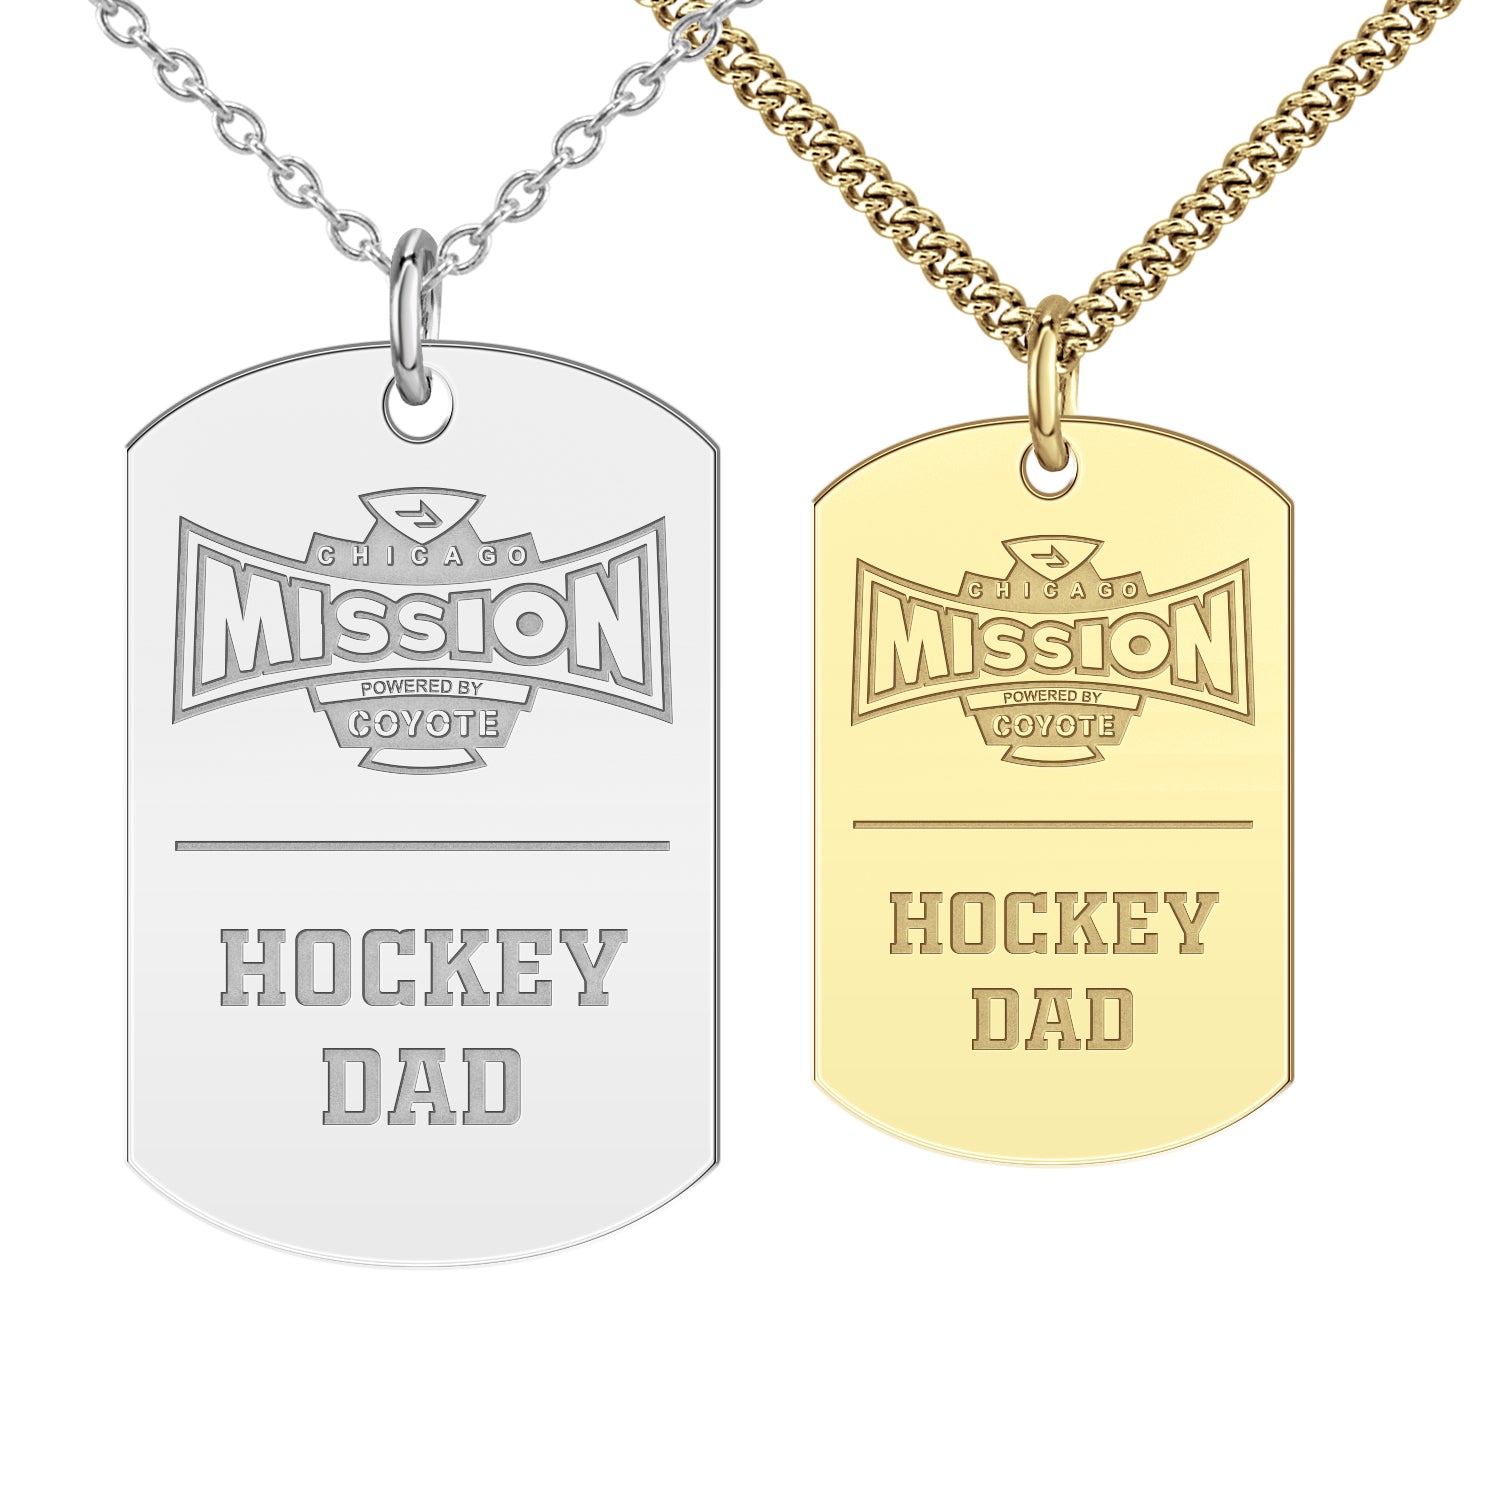 Chicago Mission Hockey Dad Tag